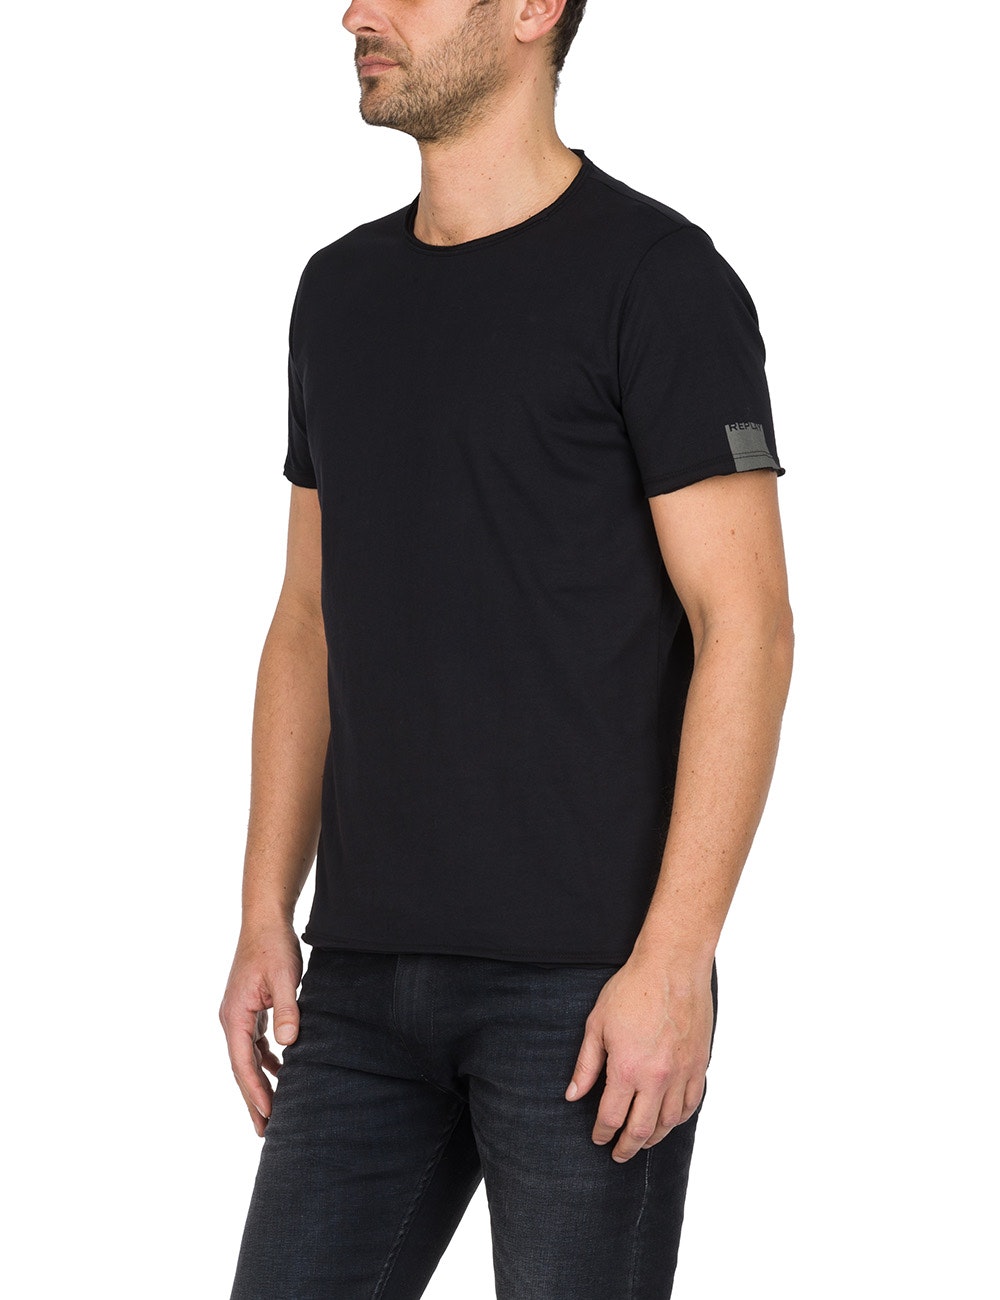 Replay Herren T-Shirt Basic Jersey Crew Neck günstig kaufen